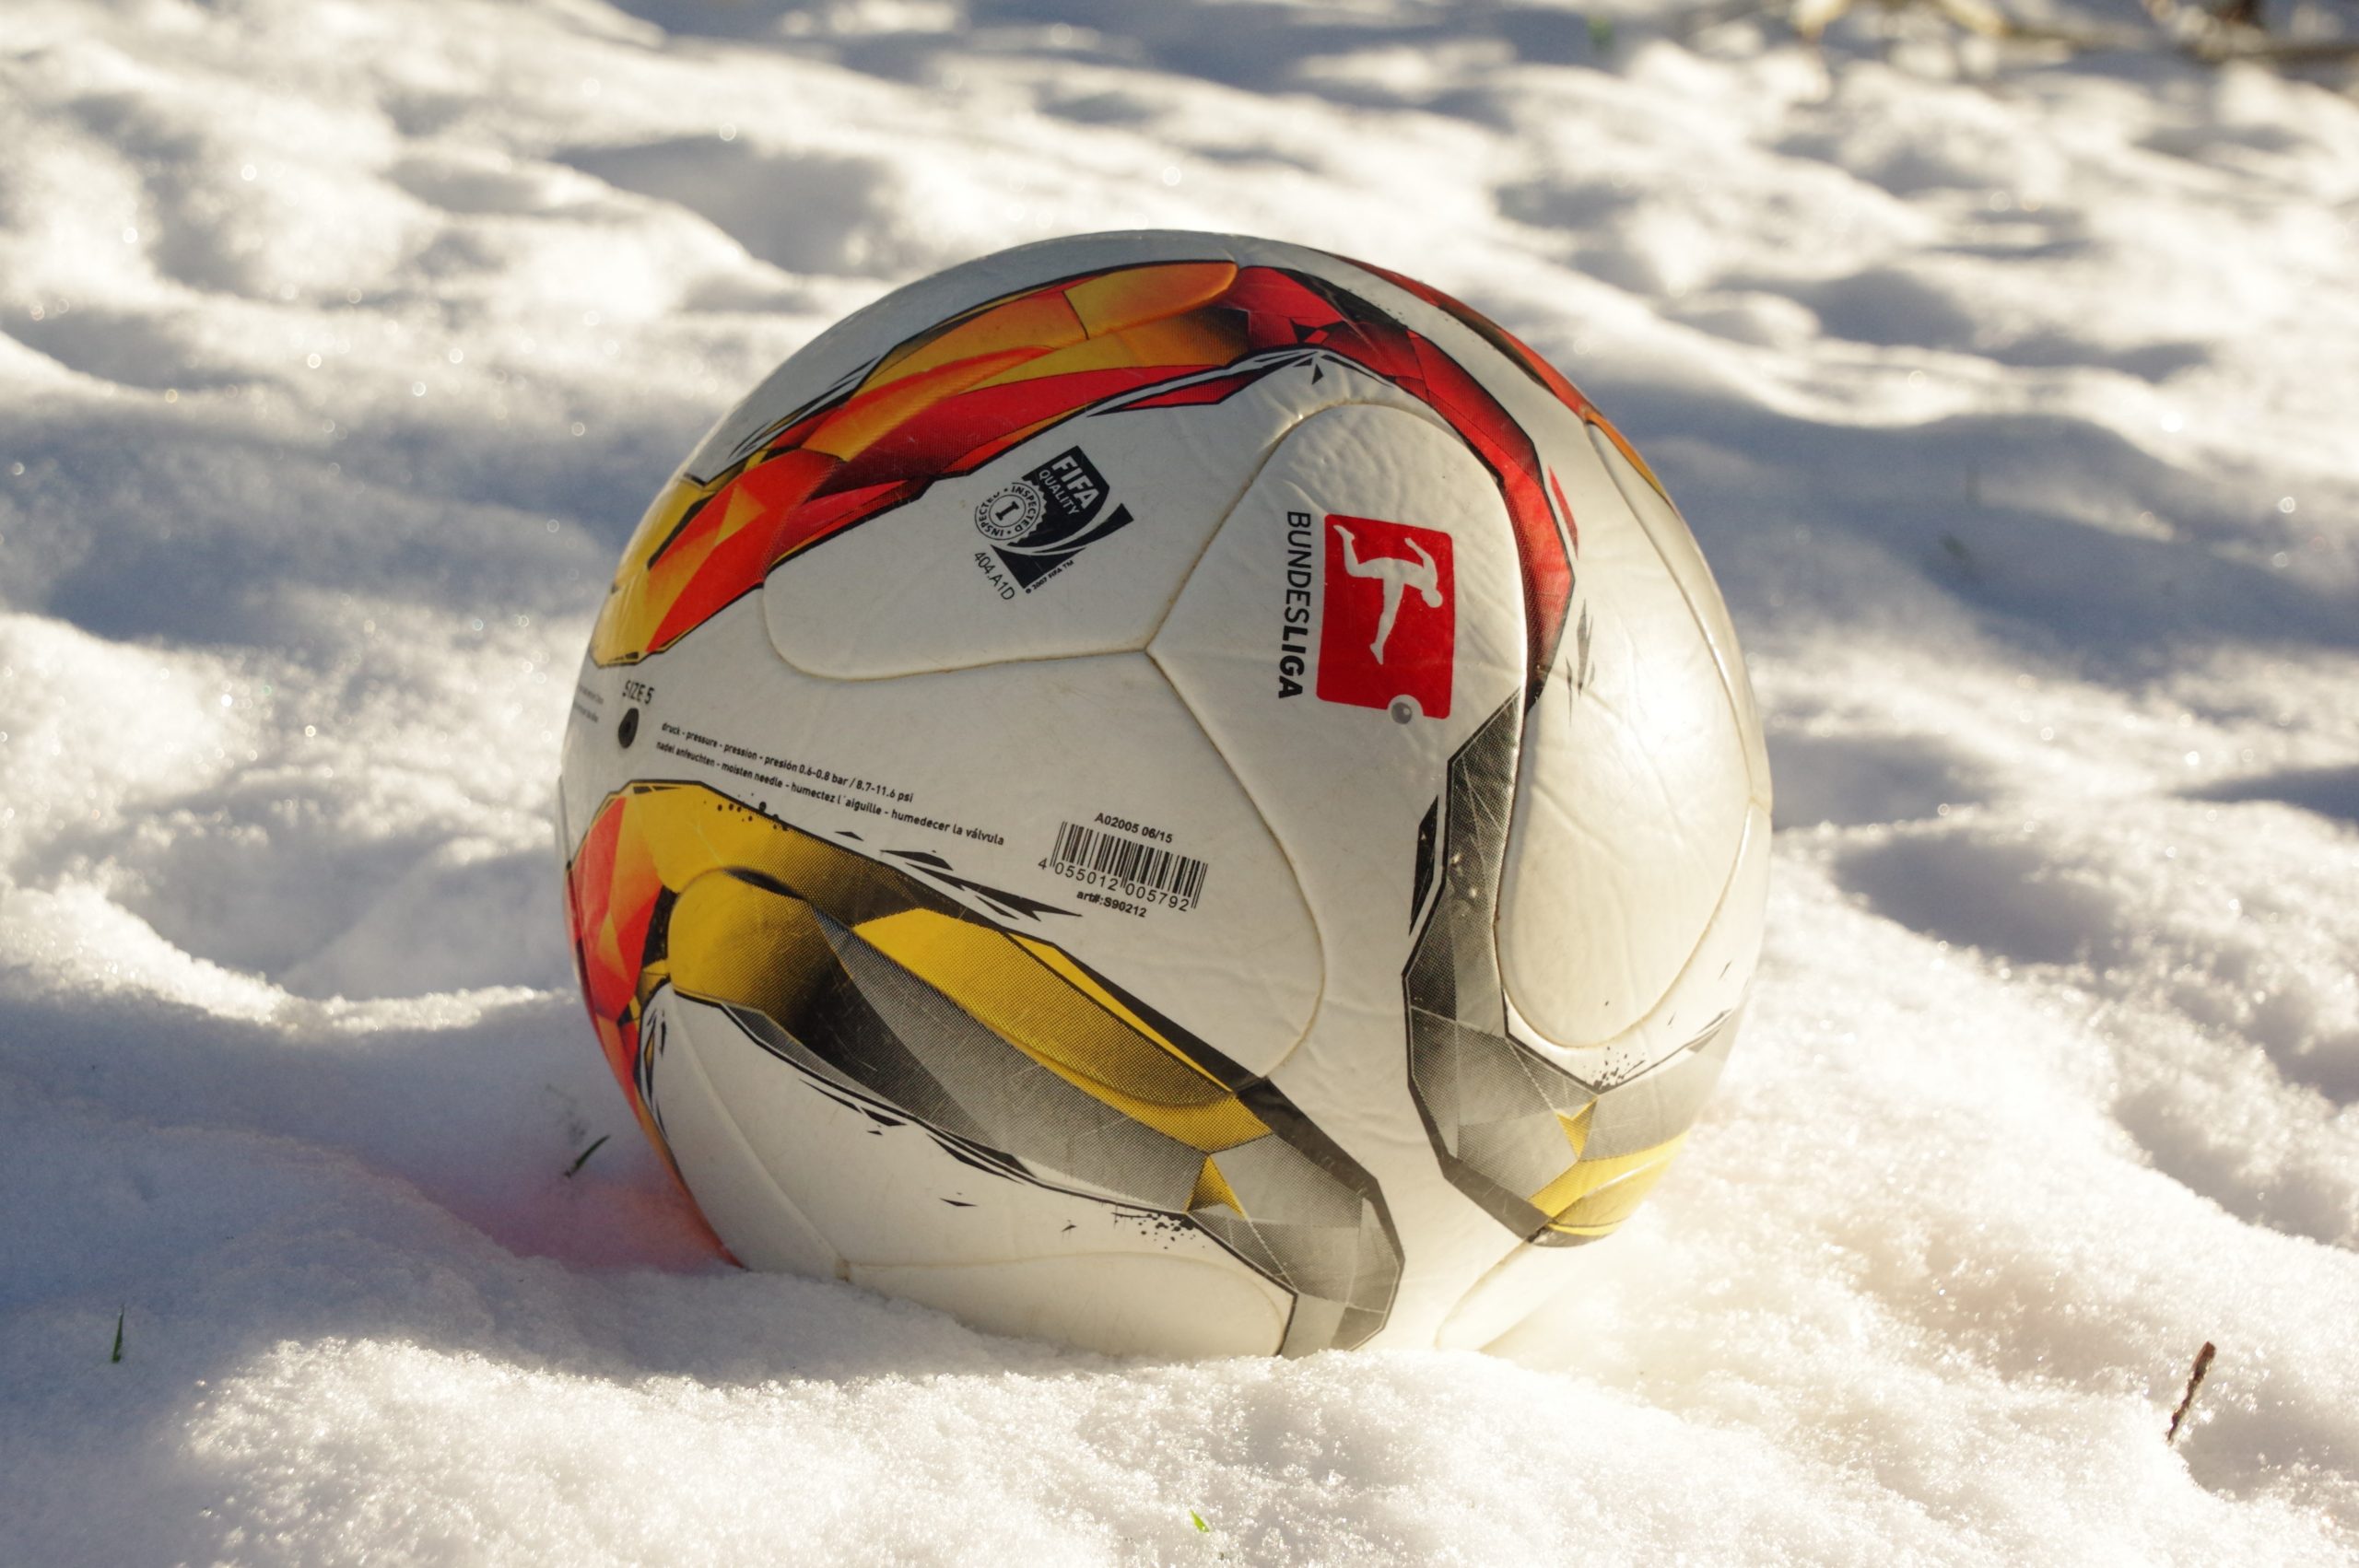 Kreisliga A3 – 25. Spieltag: Spielabsage wegen starken Schneefalls in Talheim